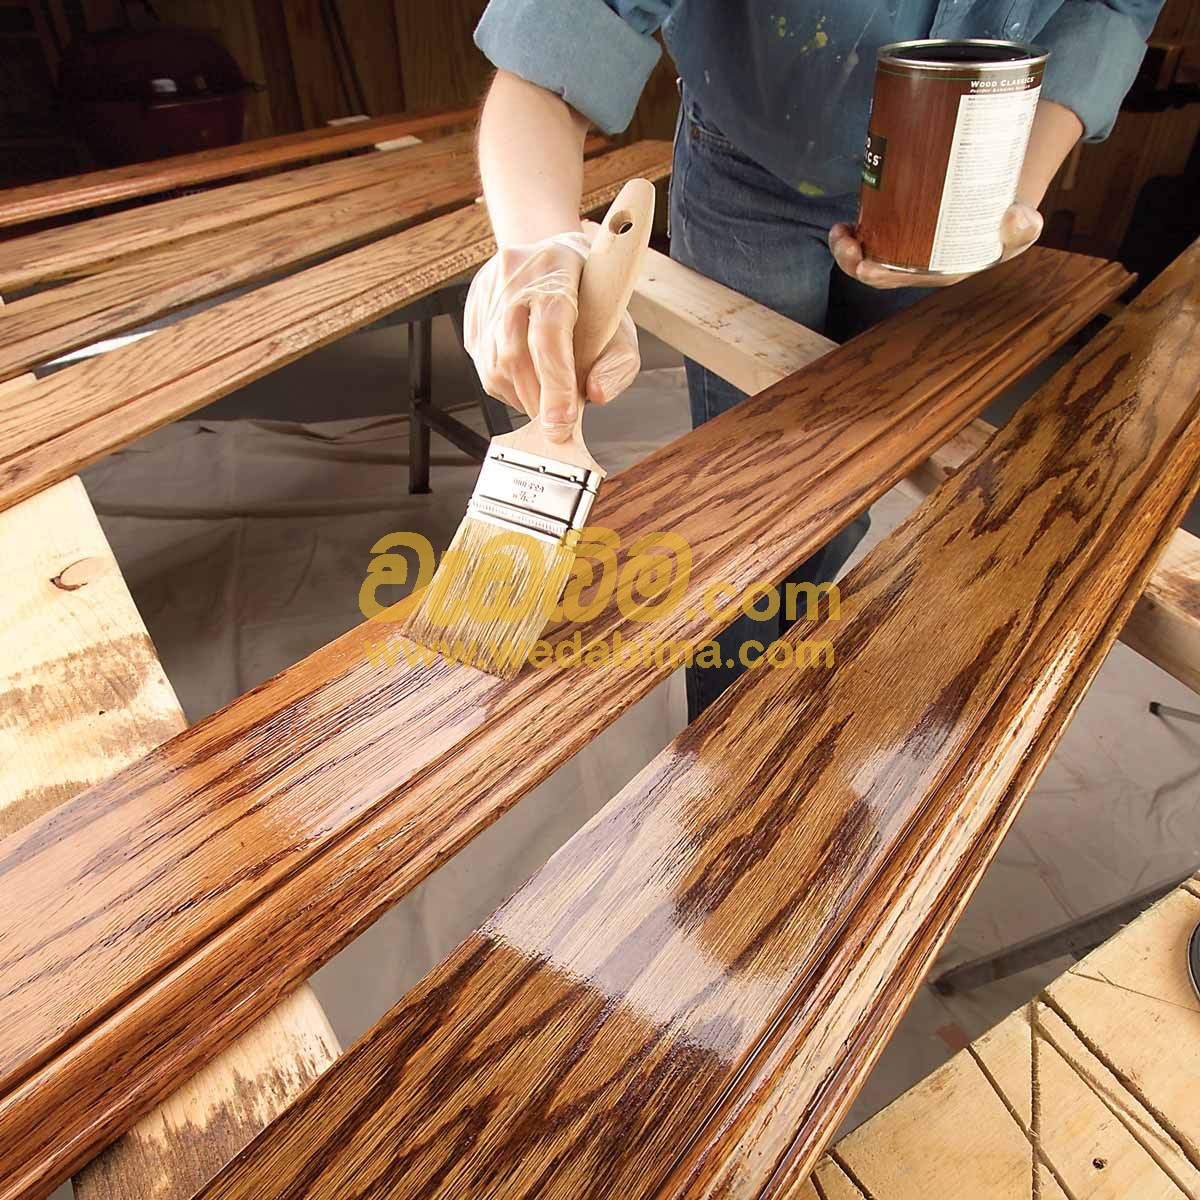 Wood finishing work